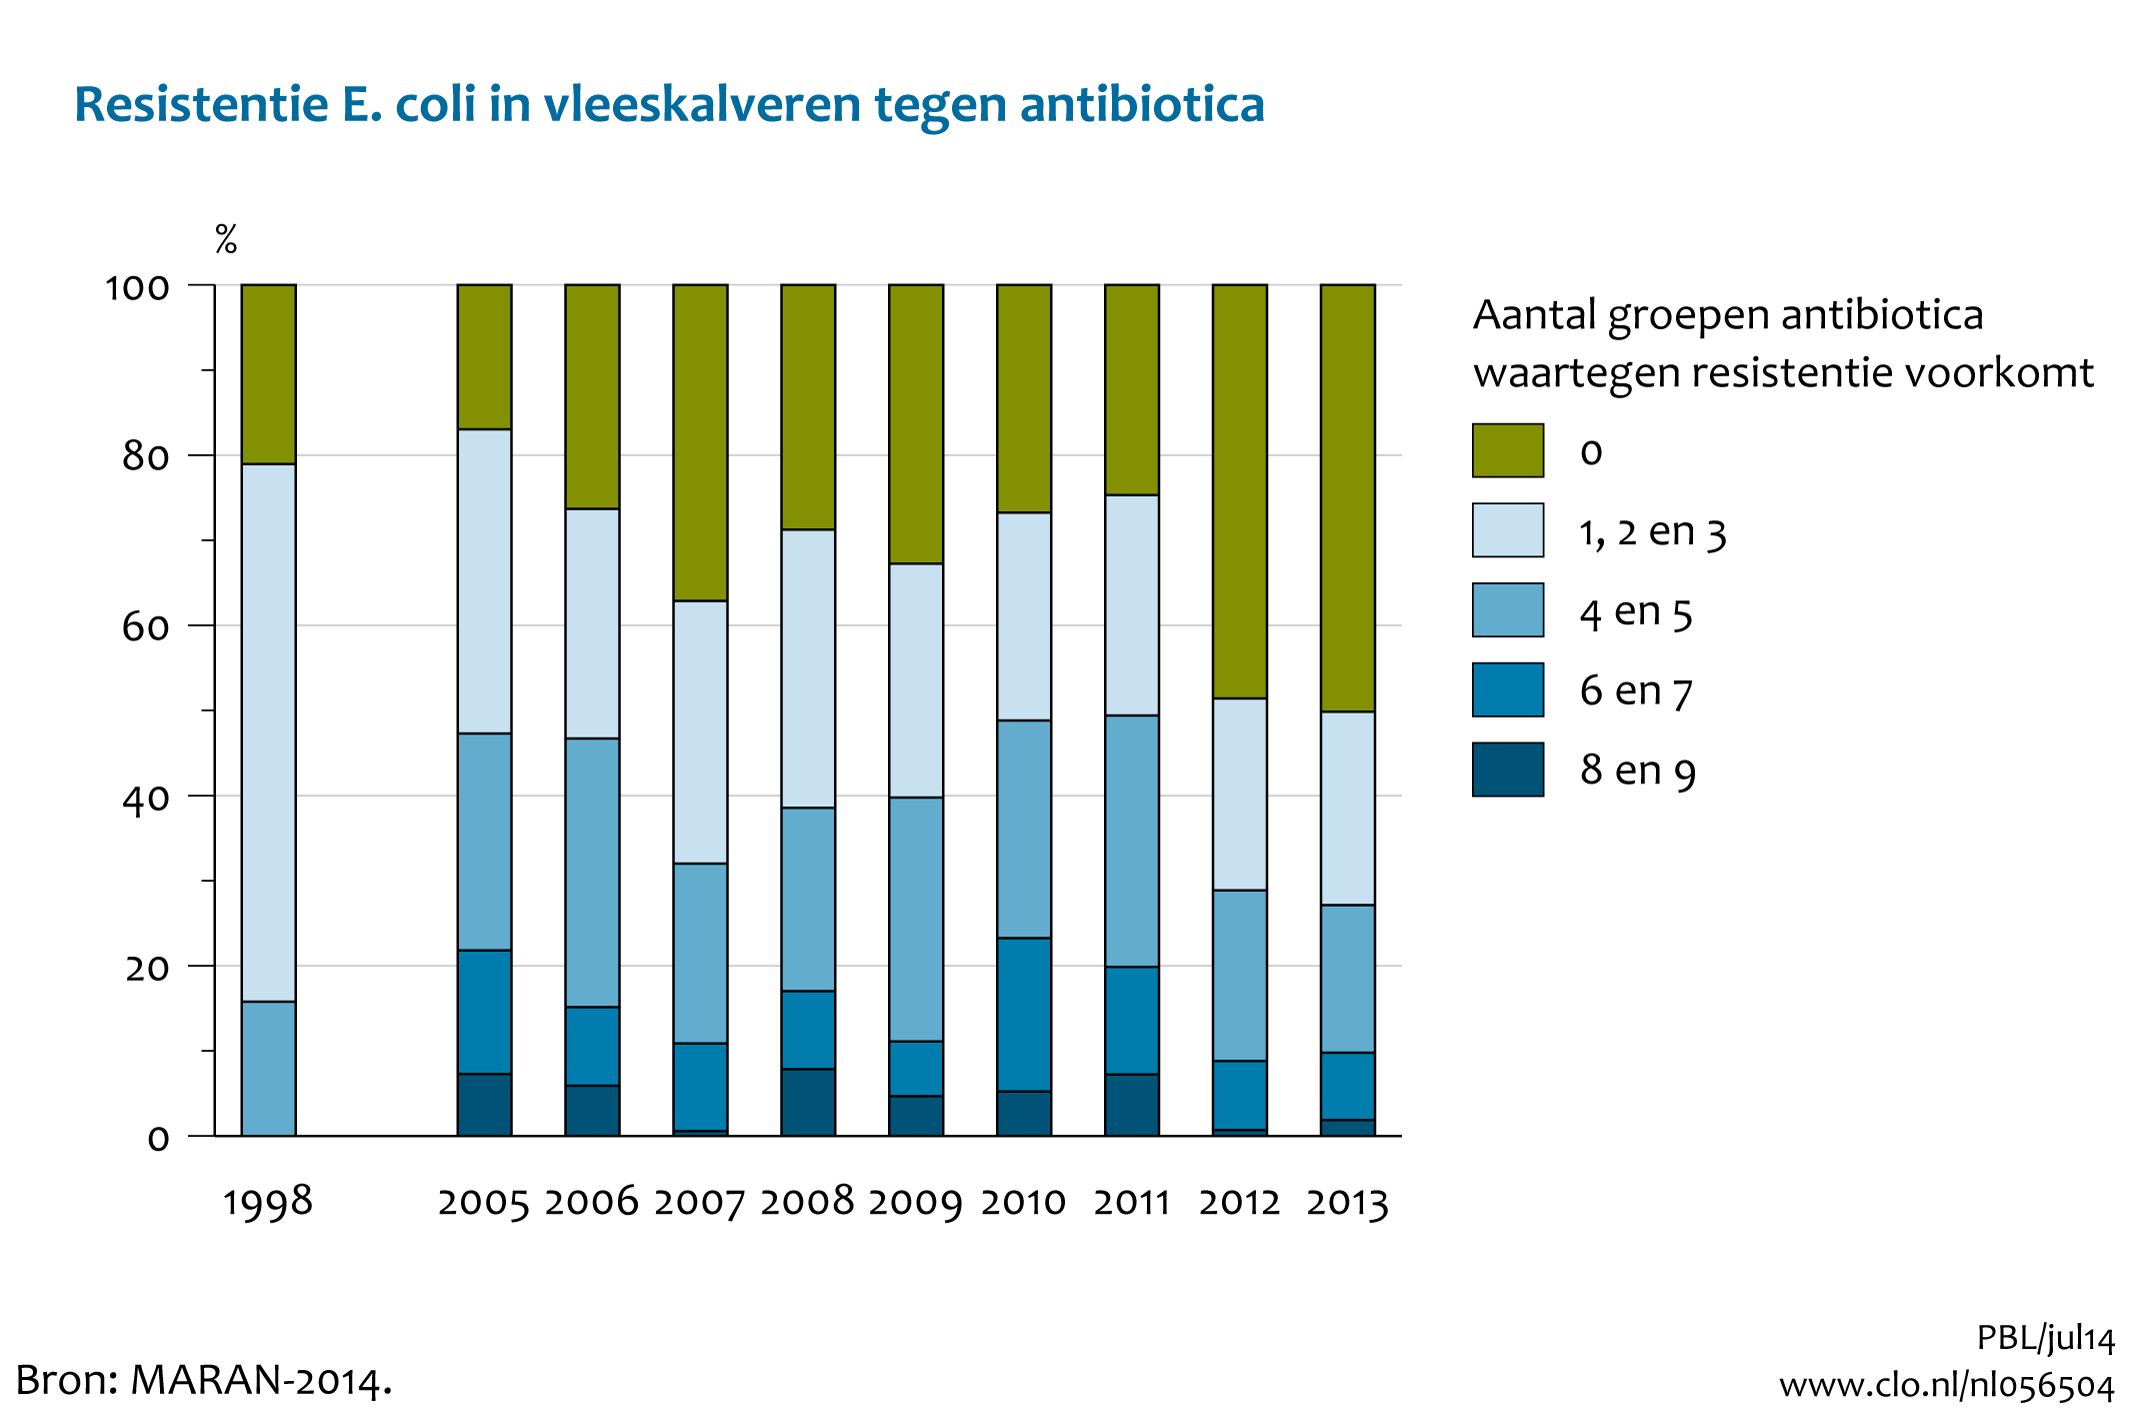 Figuur Resistentie E.coli in vleeskalveren tegen antibiotica. Steeds meer dieren dragen bacteriën met meervoudige resistentie tegen antibiotica.. In de rest van de tekst wordt deze figuur uitgebreider uitgelegd.